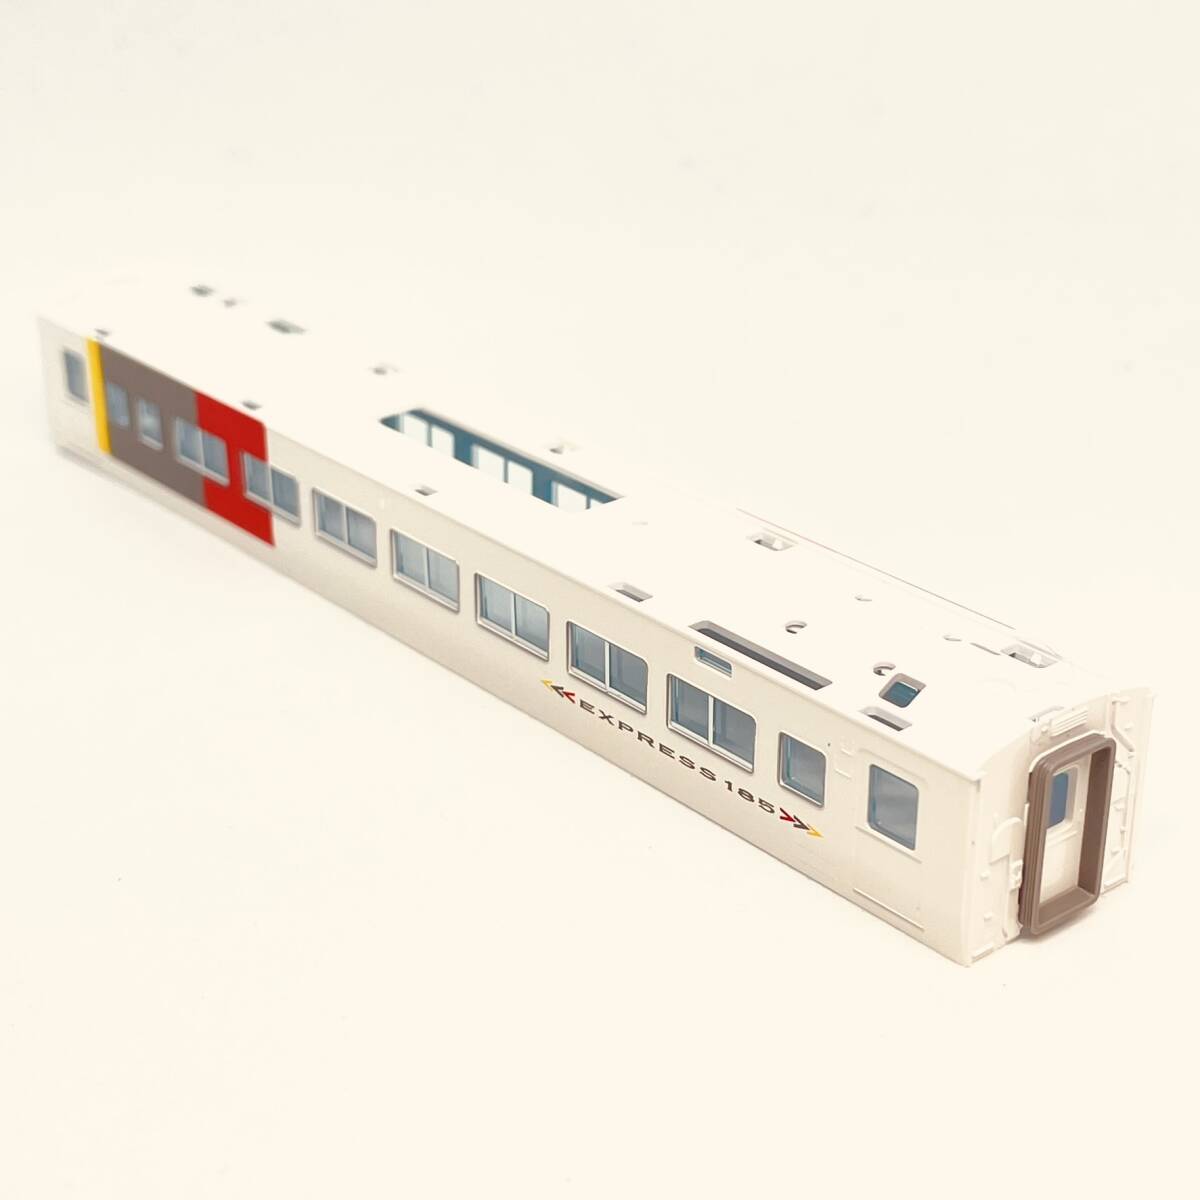 TOMIX モハ185-200 ボディ+ガラス 1両分入り 98756 JR 185-200系特急電車(エクスプレス185)セットからのバラシ_別の角度からの画像です。